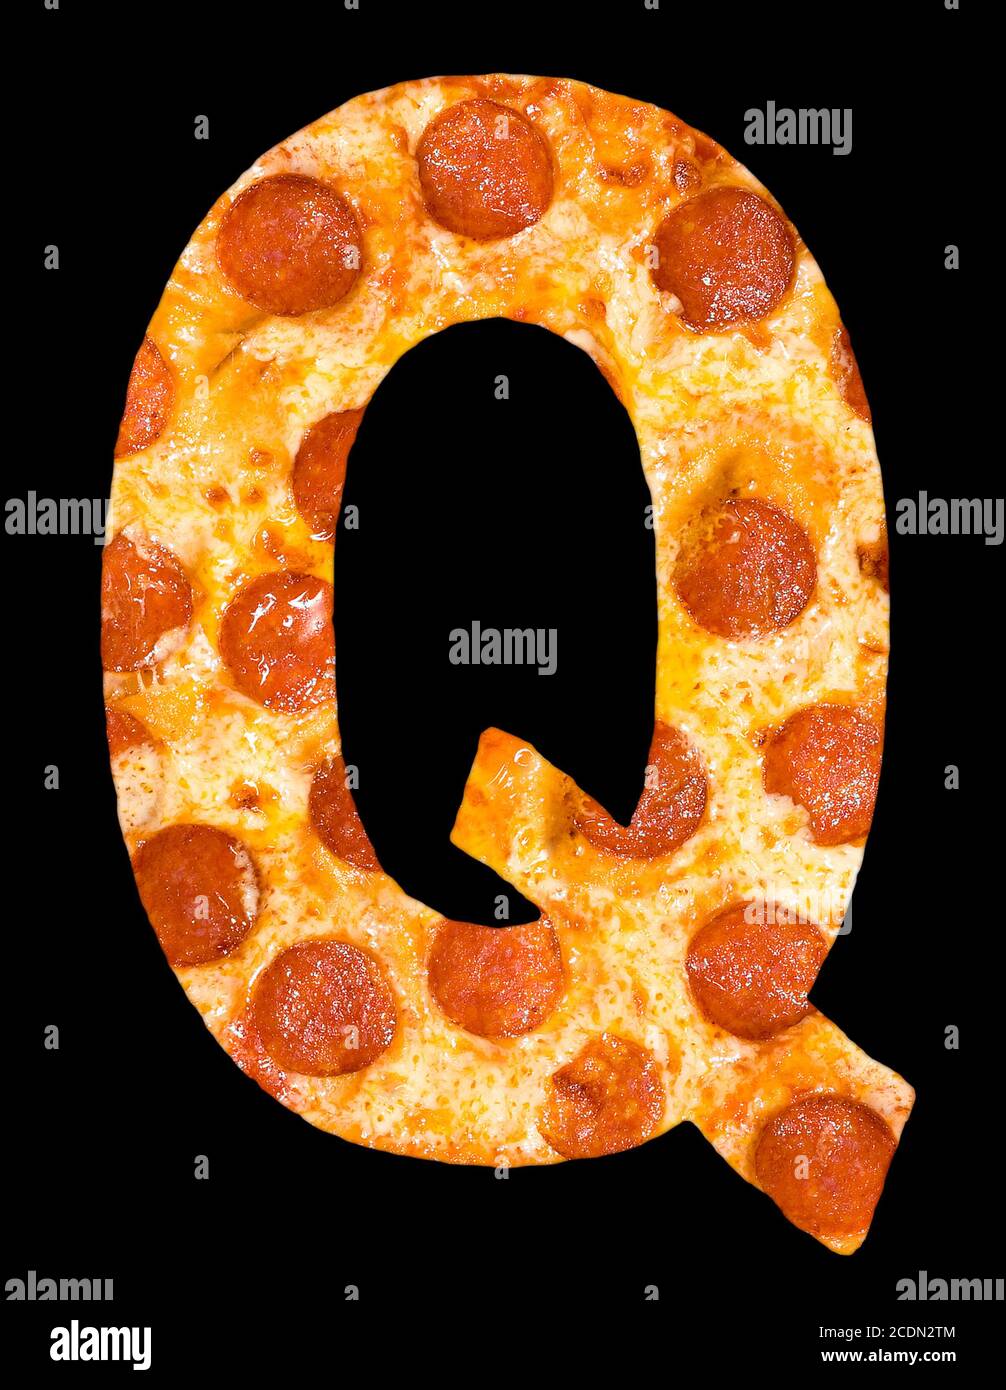 Lettre Q coupée de pizza avec peperoni Banque D'Images